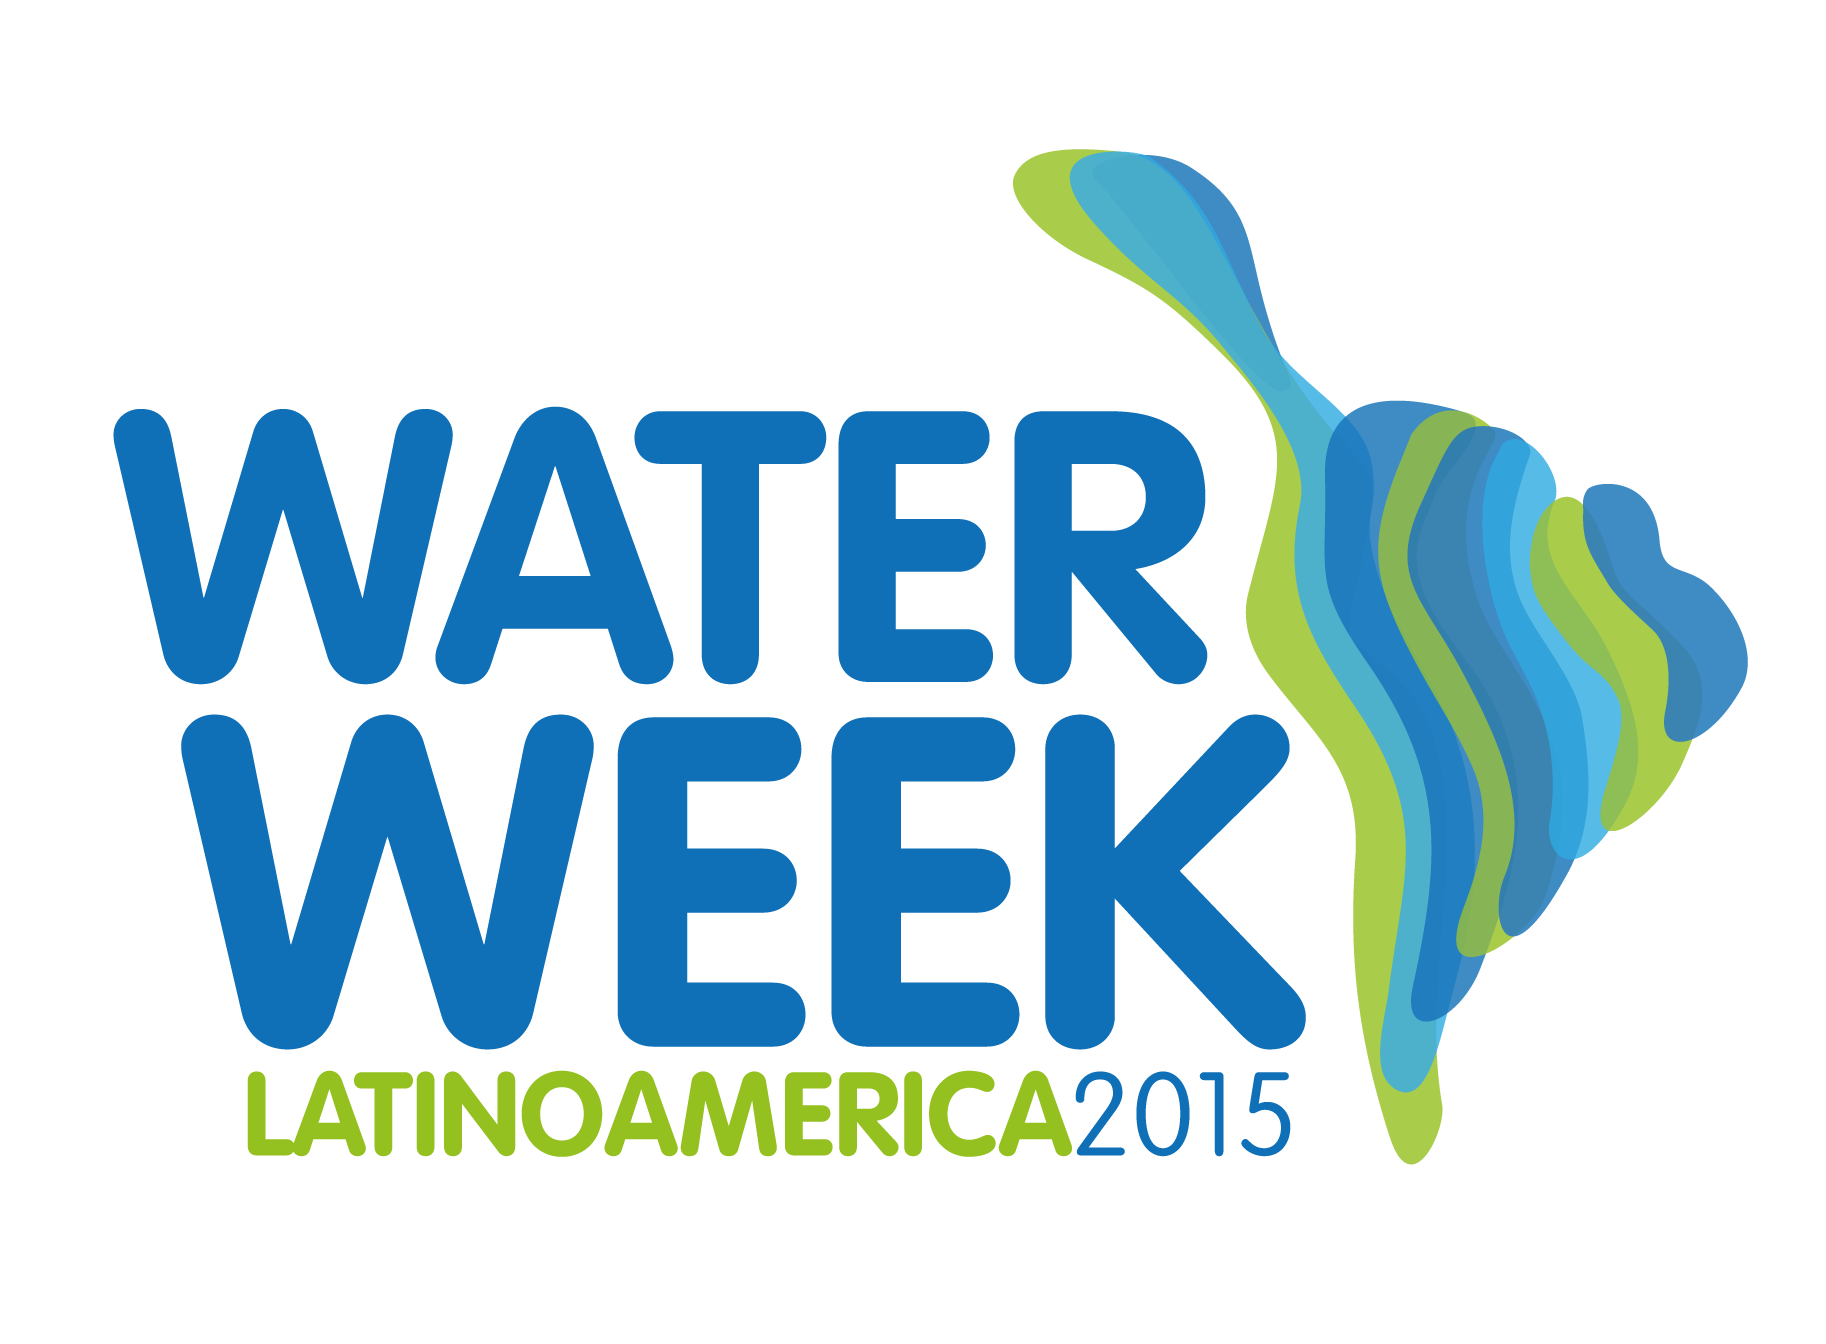 Water Week Latin America 2015